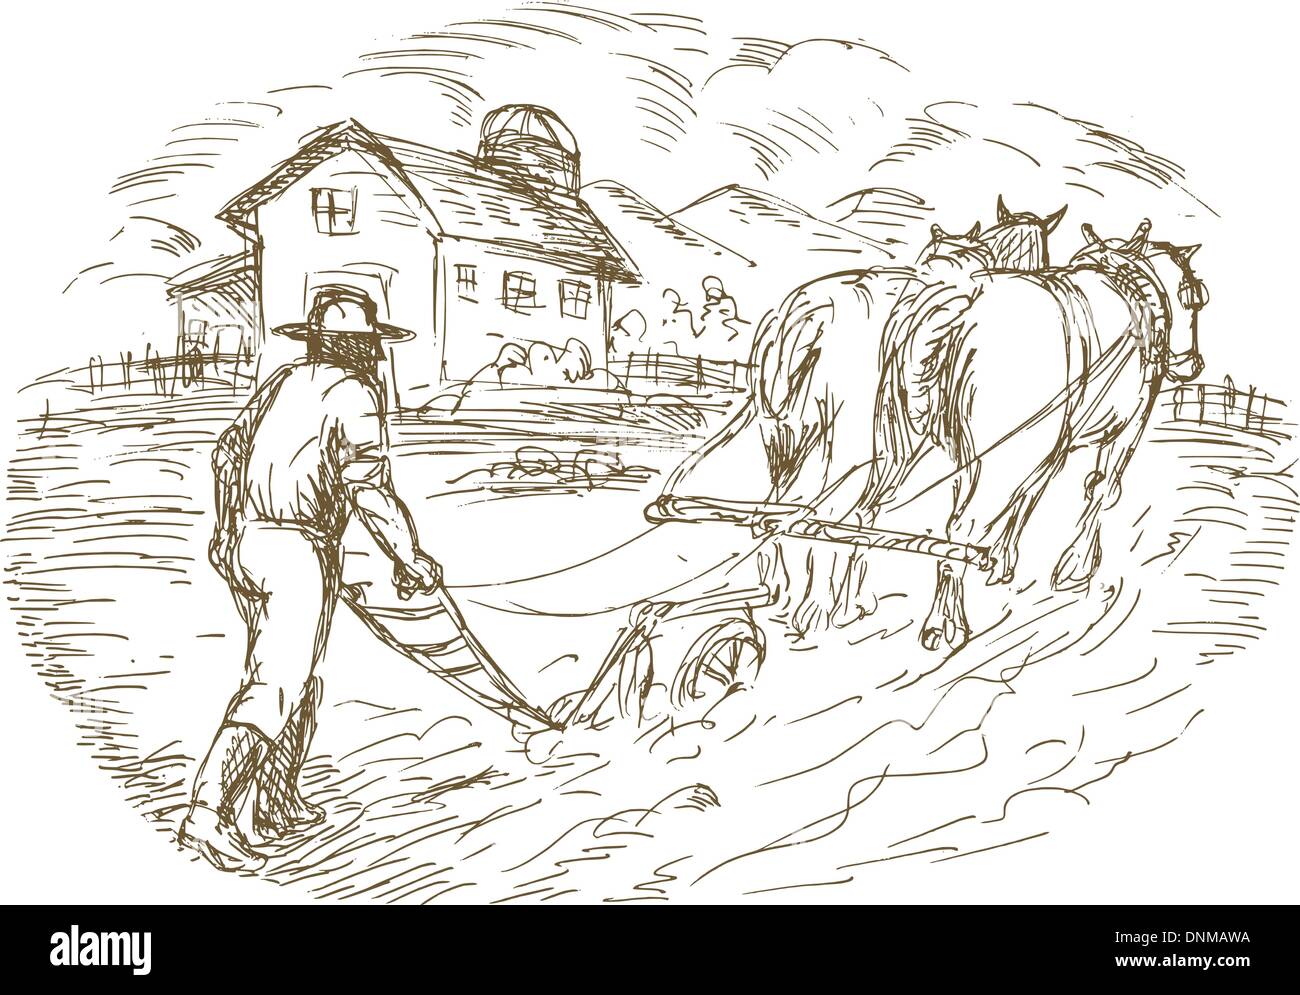 Des croquis dessinés à la main, vector illustration d'un agriculteur et l'labourer le champ avec barn farmhouse Illustration de Vecteur